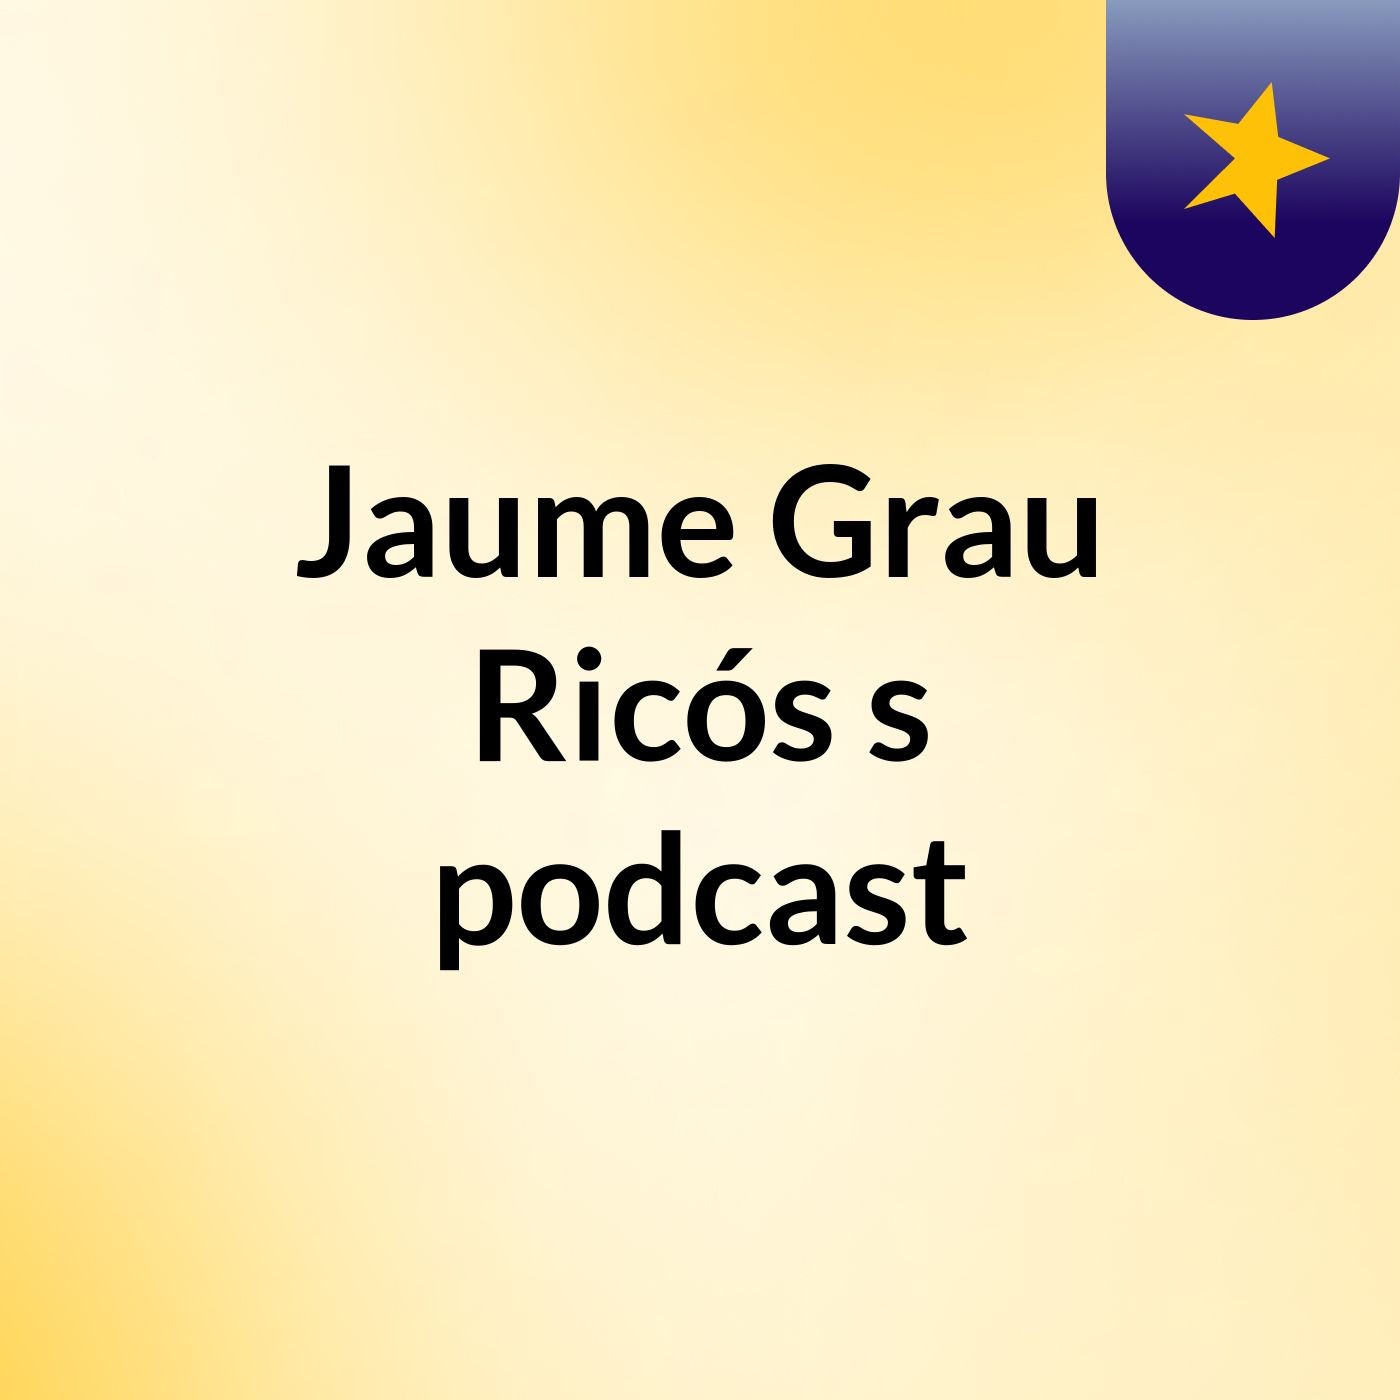 Jaume Grau Ricós's podcast